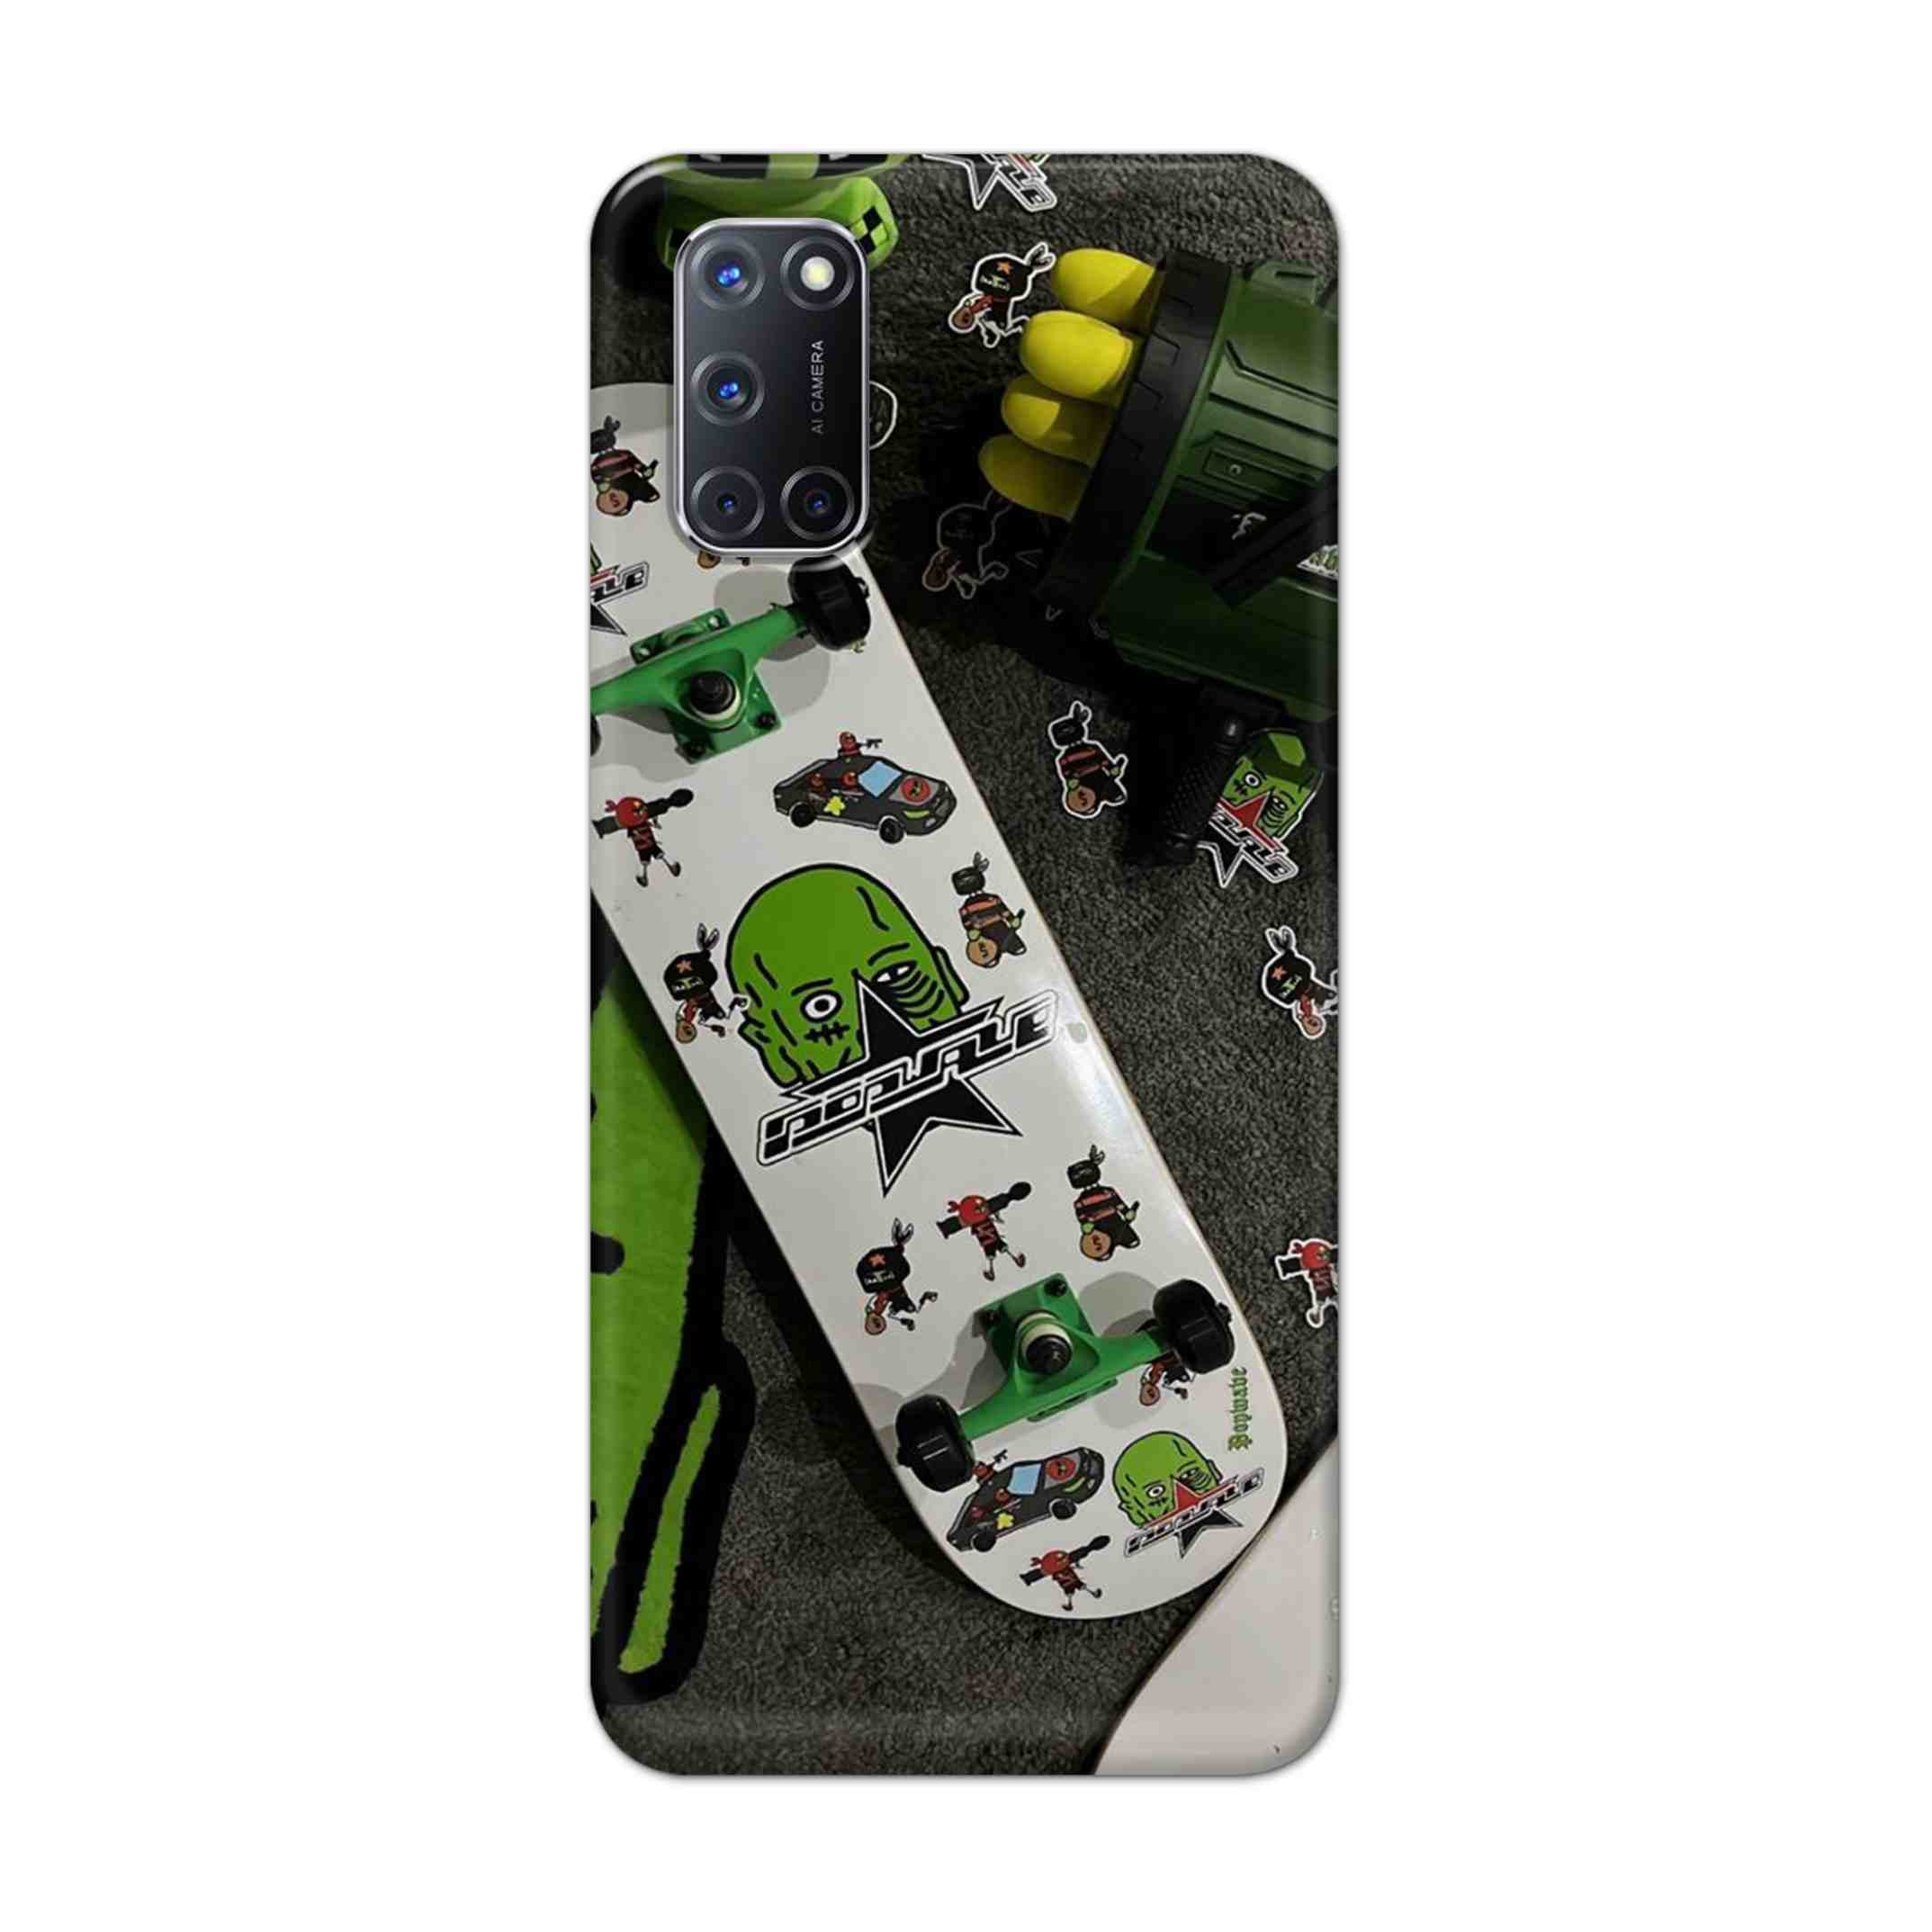 Buy Hulk Skateboard Hard Back Mobile Phone Case Cover For Oppo A52 Online